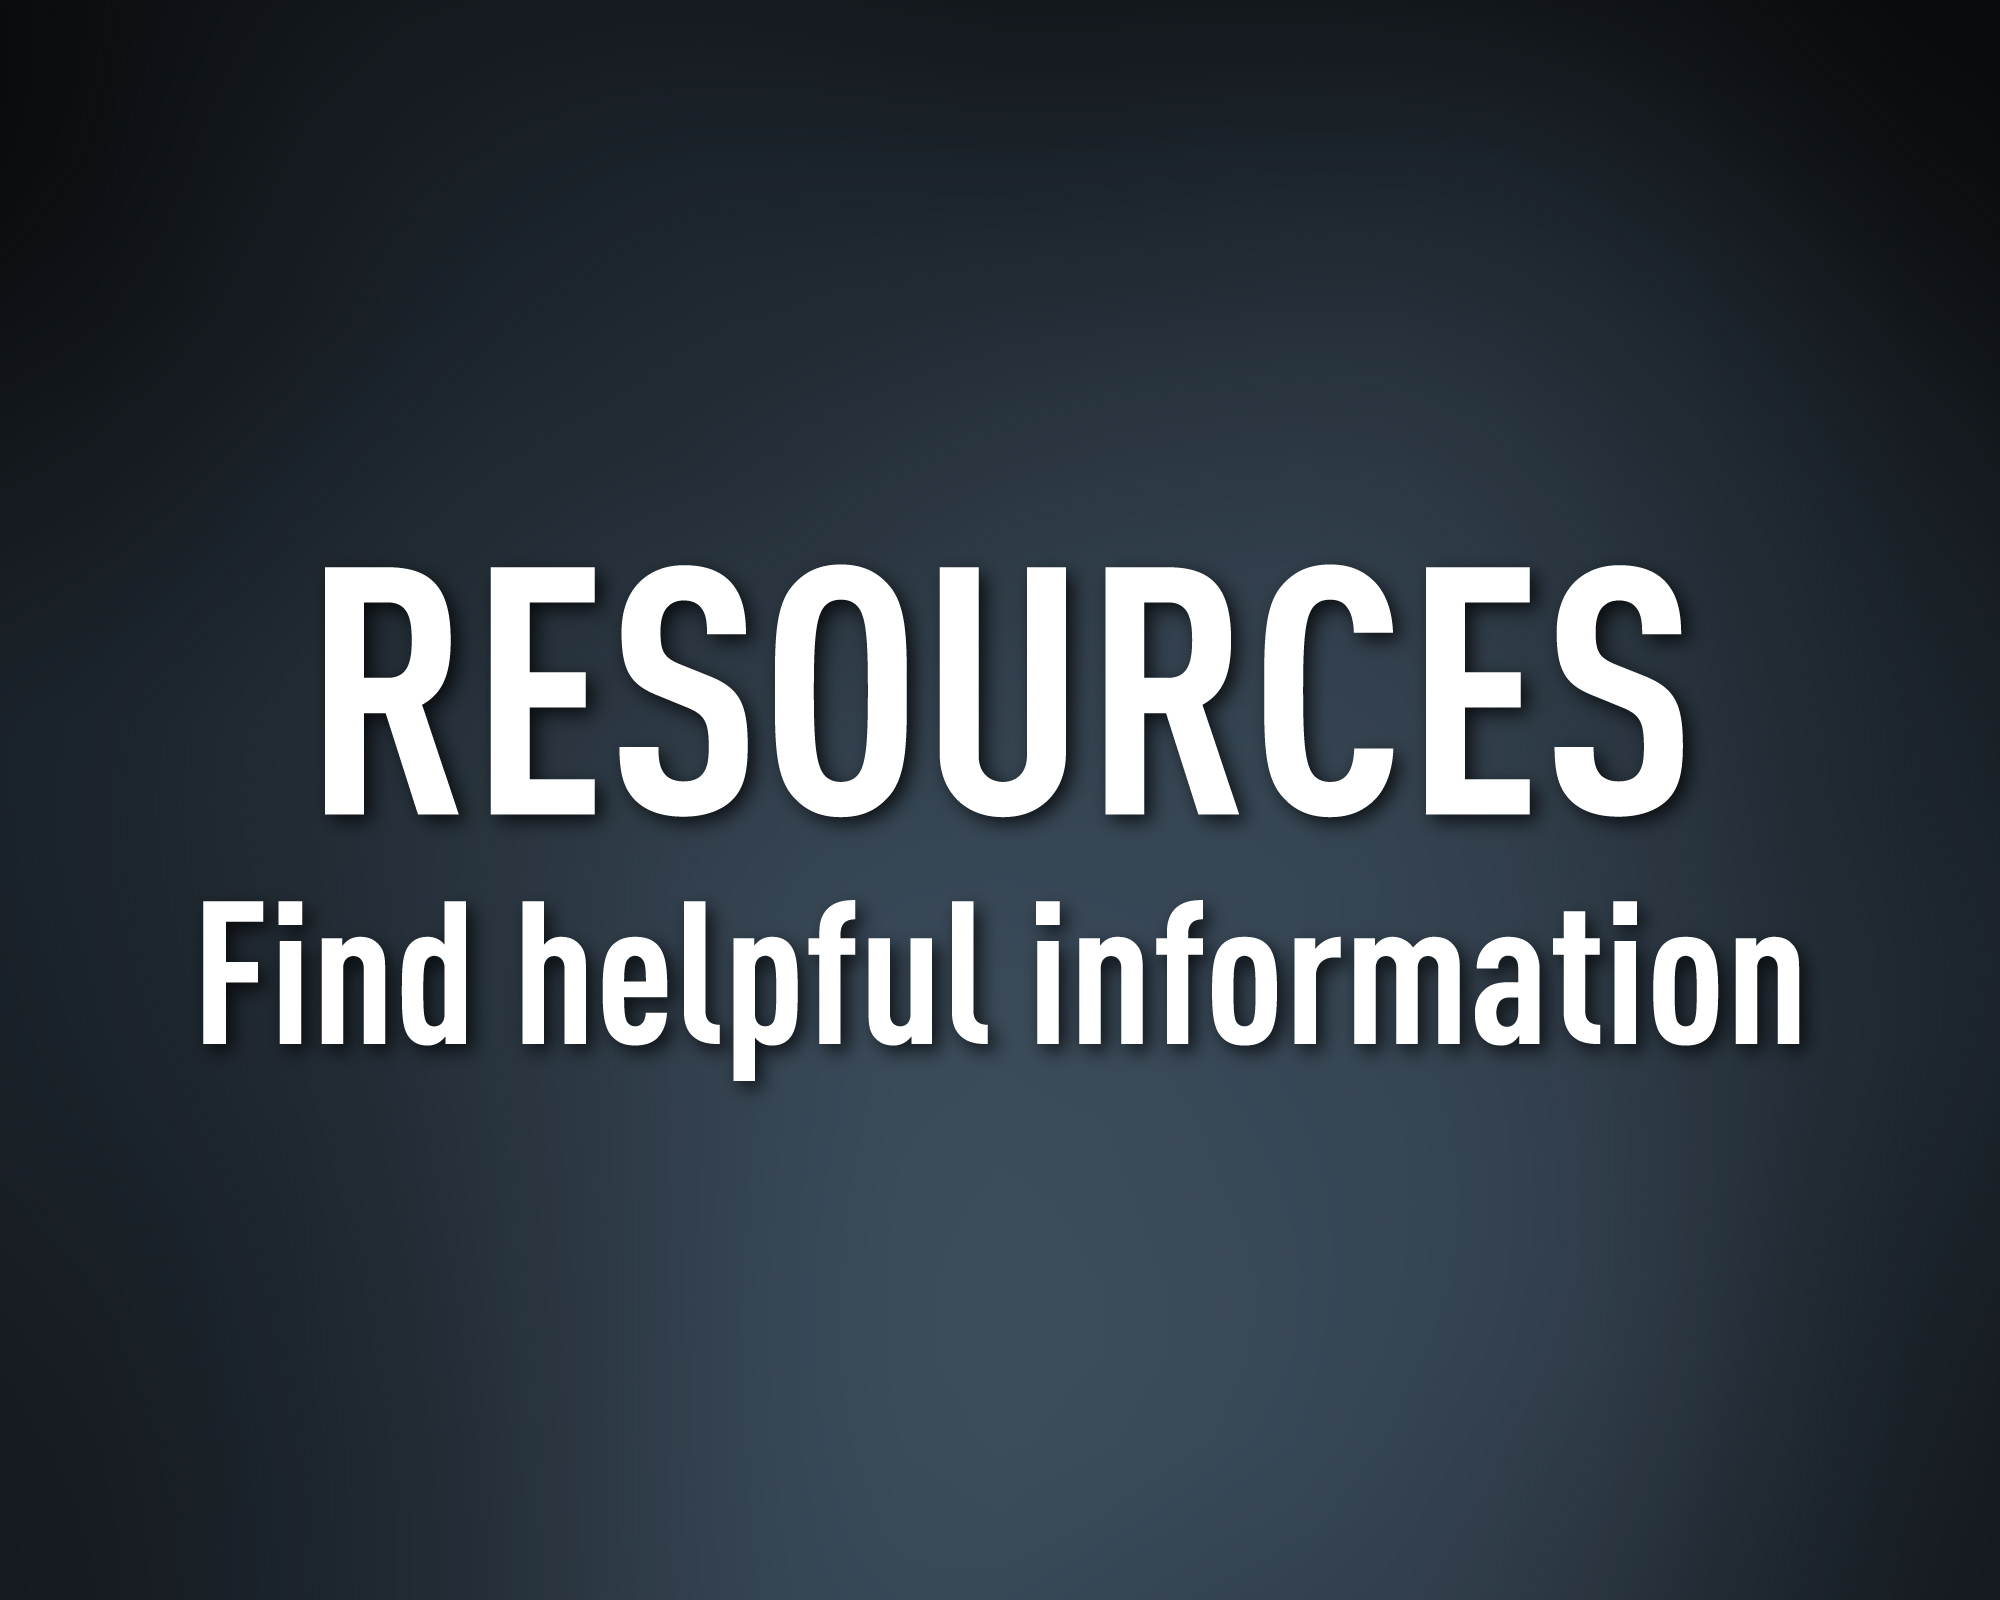 Resources. Find helpful information